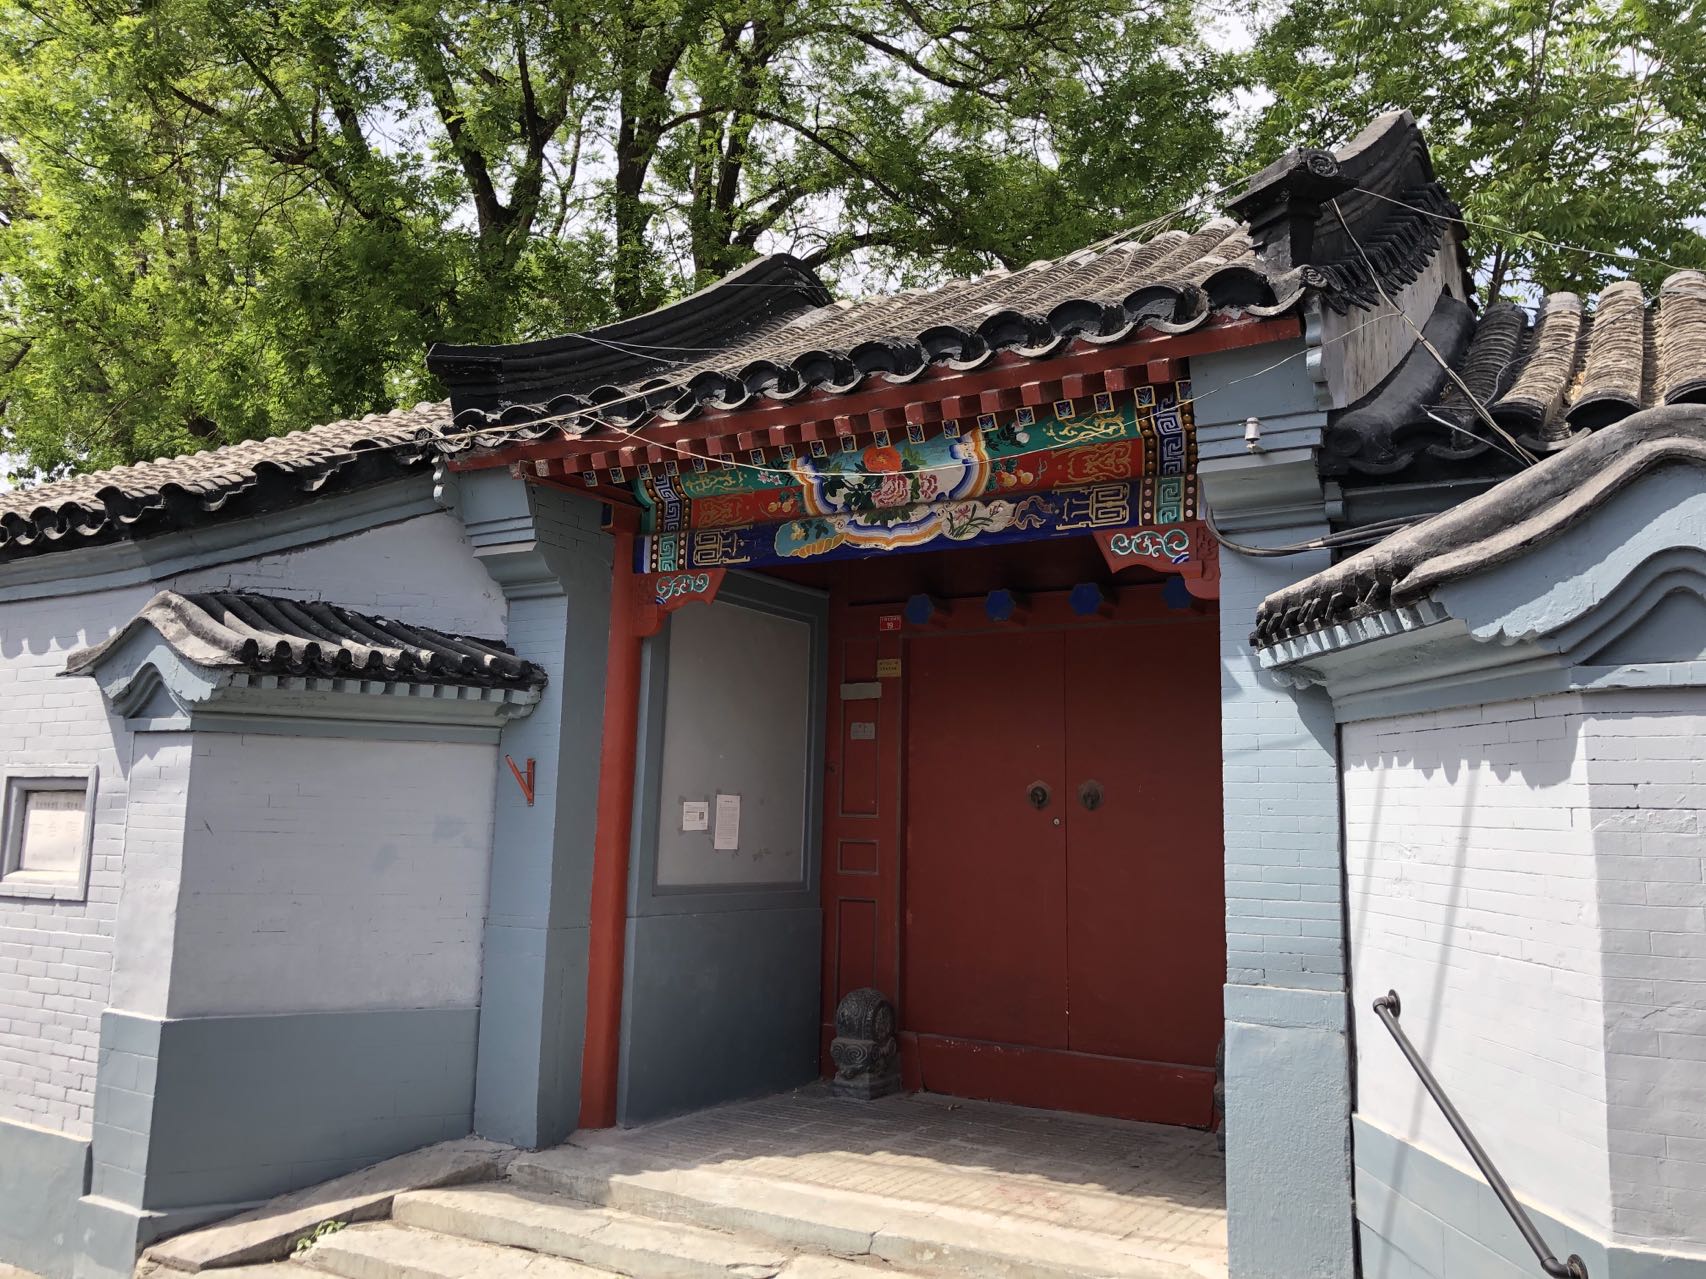 Wu-Peifu-s-former-residence-in-Shijin-Huayuan-Hutong.-Image-via-That-s-Alistair-Baker-Brian.jpeg